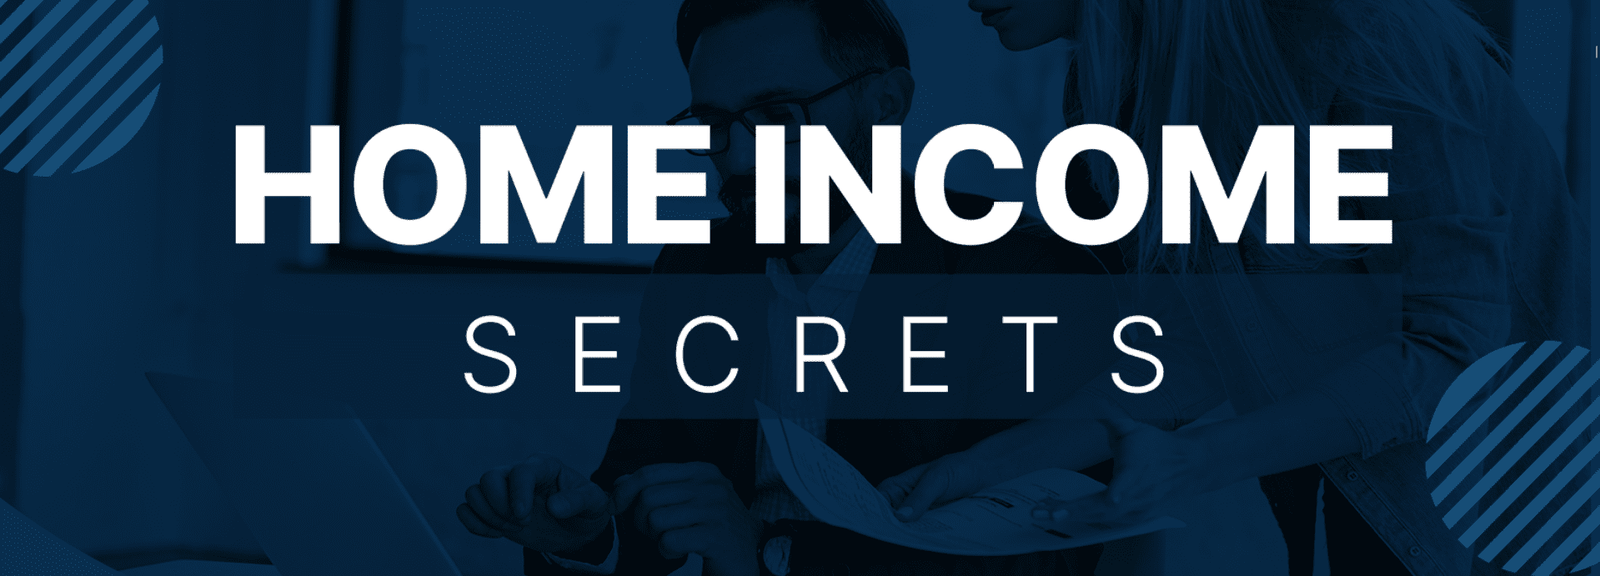 Home Income Secrets